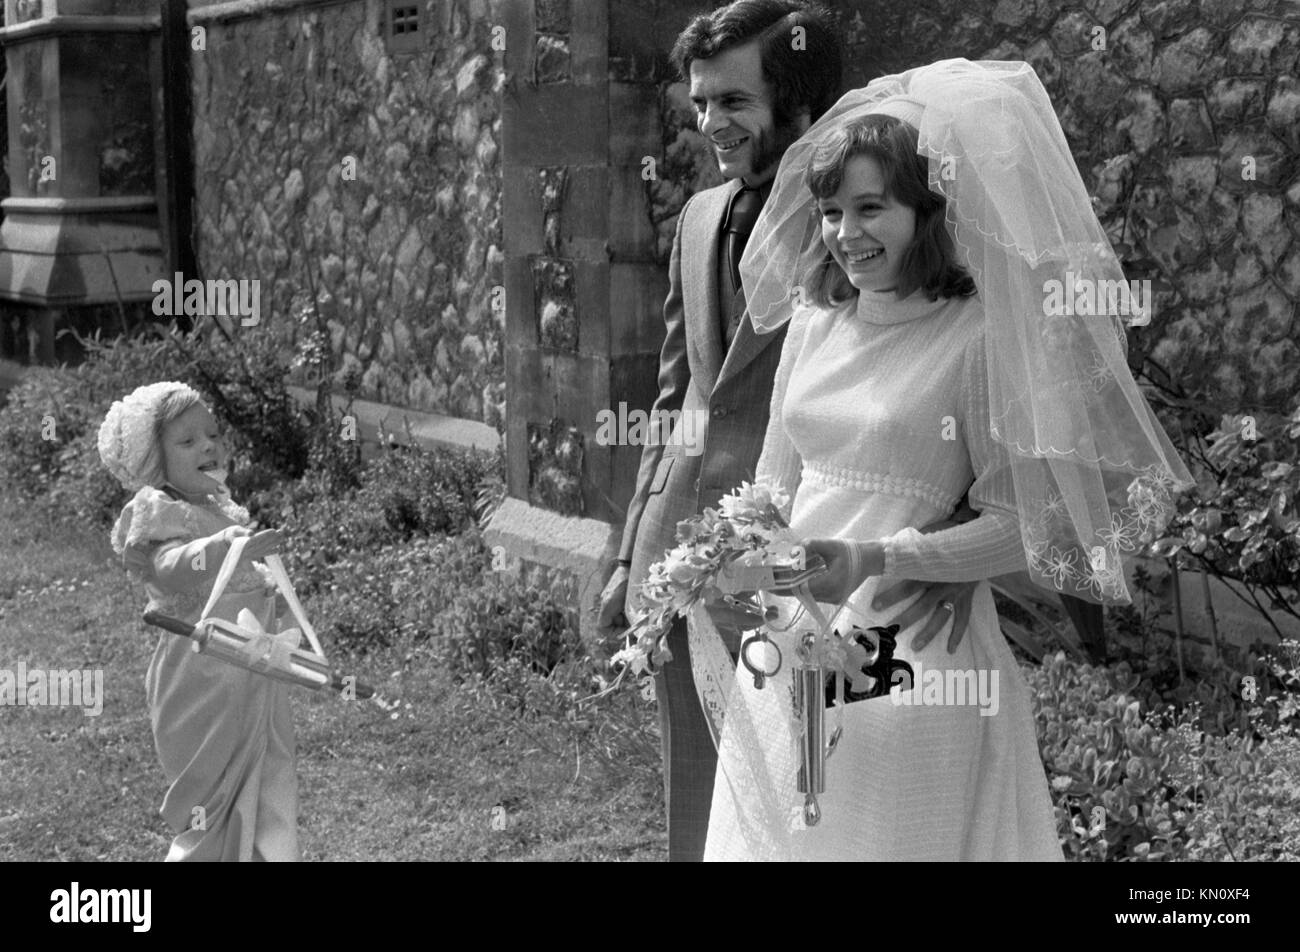 Rituale di nozze una giovane cameriera porta un cartellino d'argento per la sposa appena sposata, che ha in serbo altri portafortuna 1970s UK England HOMER SYKES Foto Stock